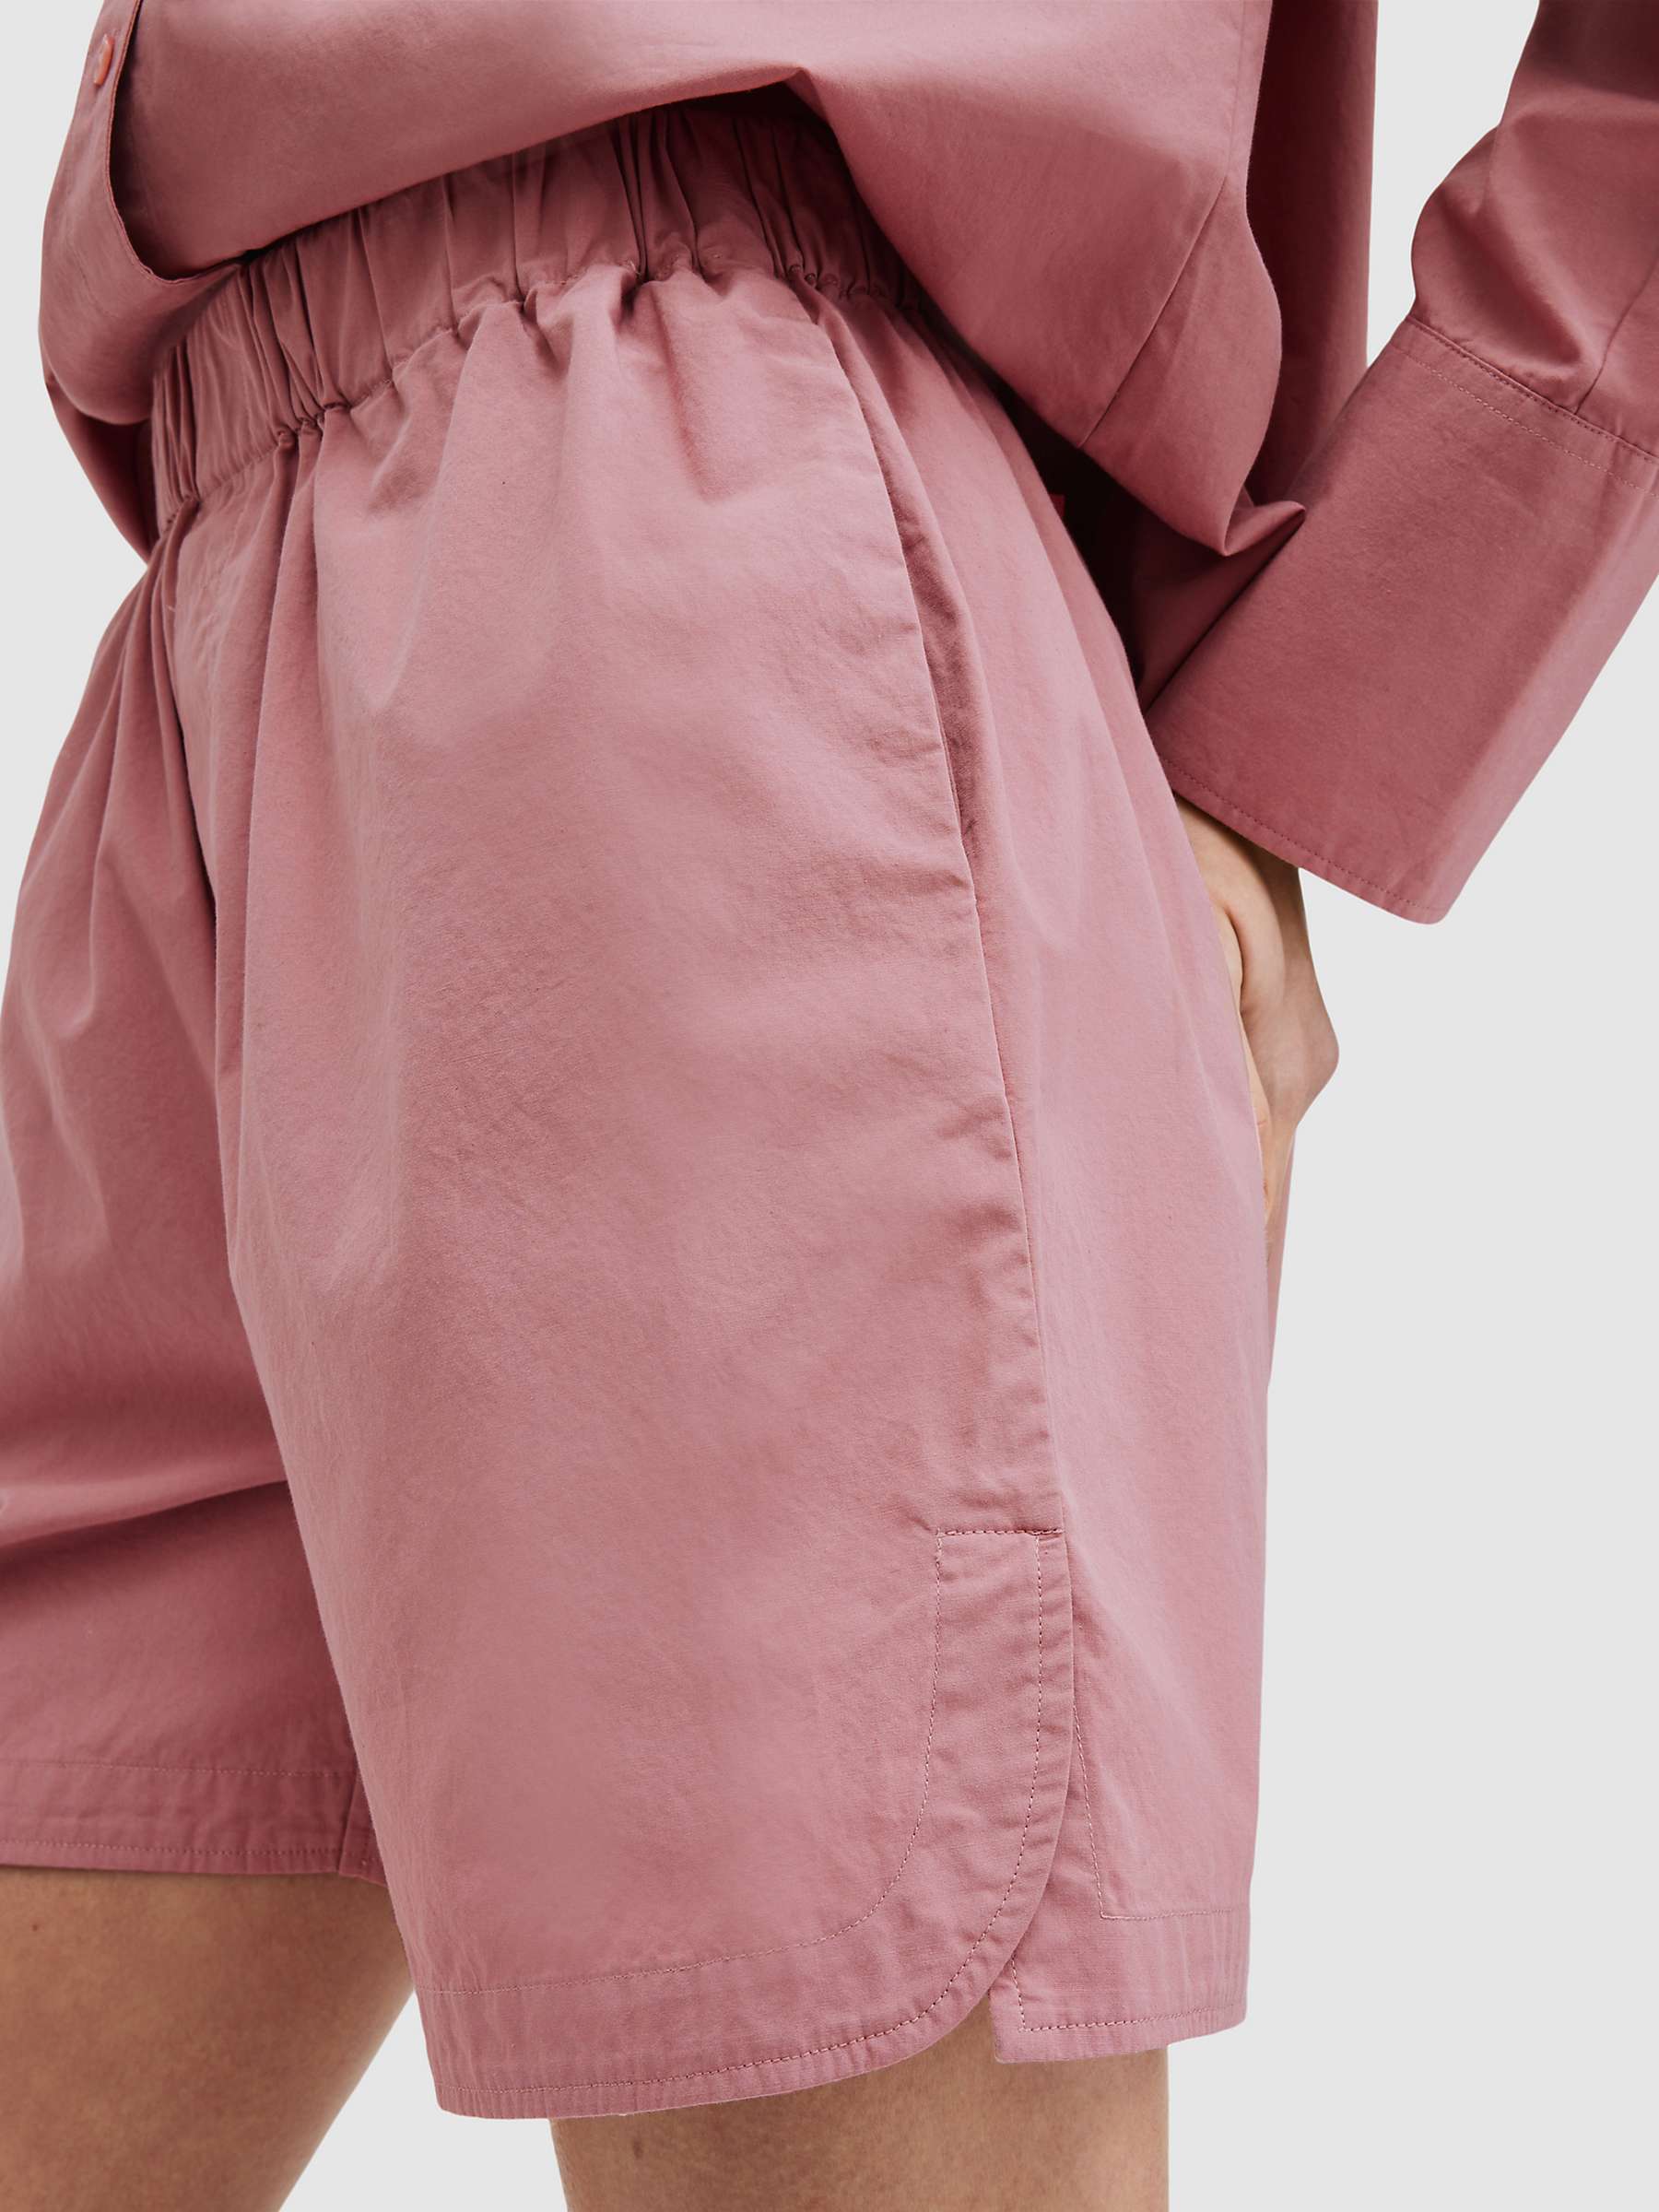 Buy AllSaints Karina Organic Cotton Shorts, Ash Rose Pink Online at johnlewis.com